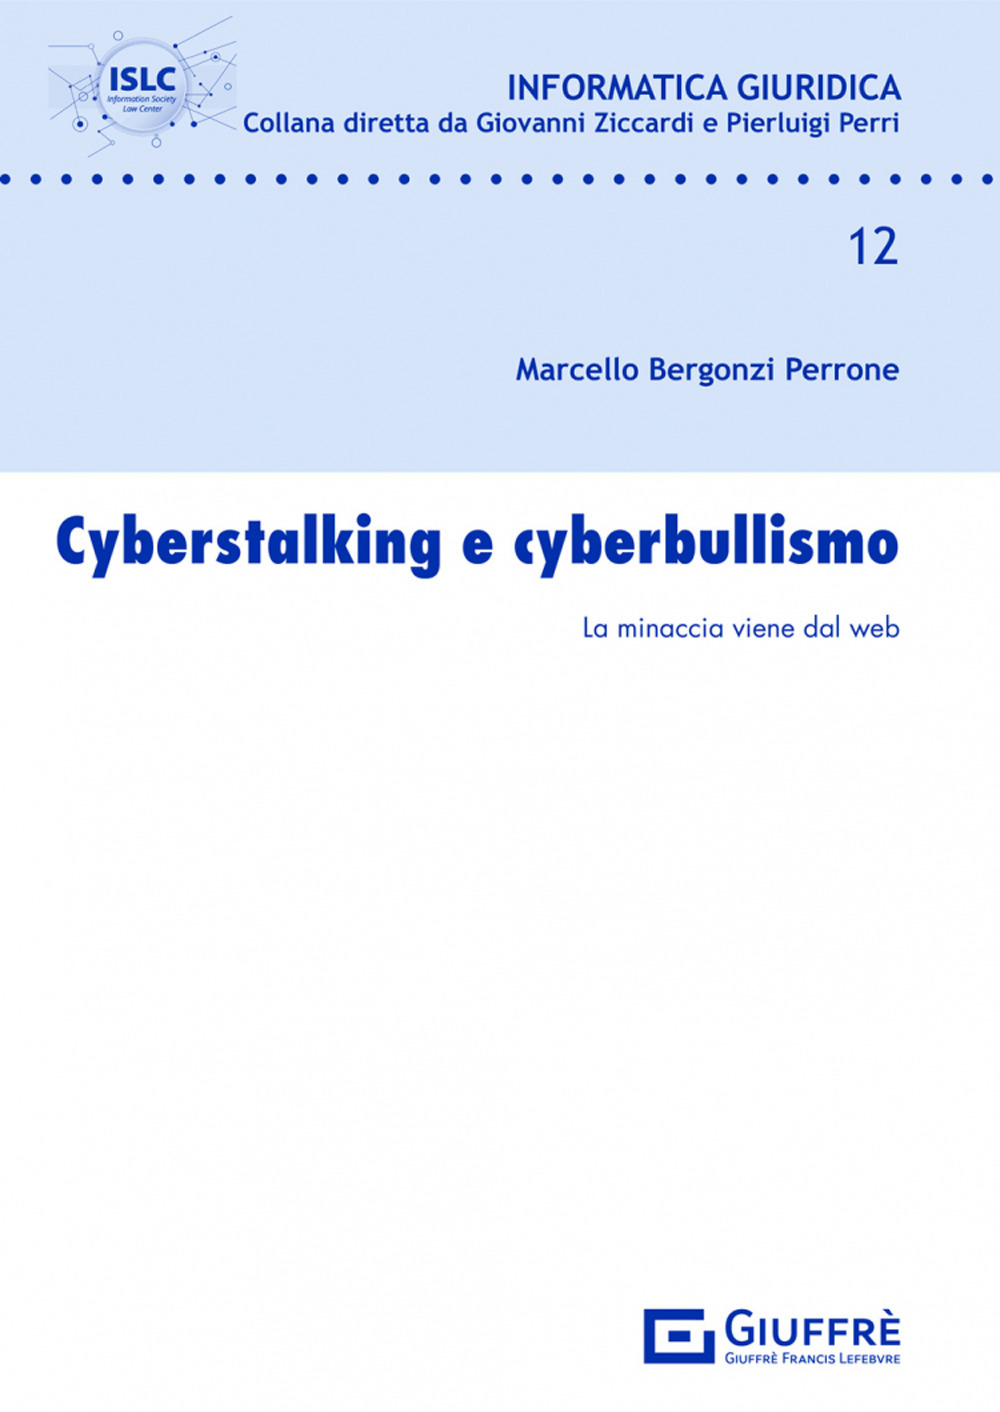 Cyberstalking e cyberbullismo